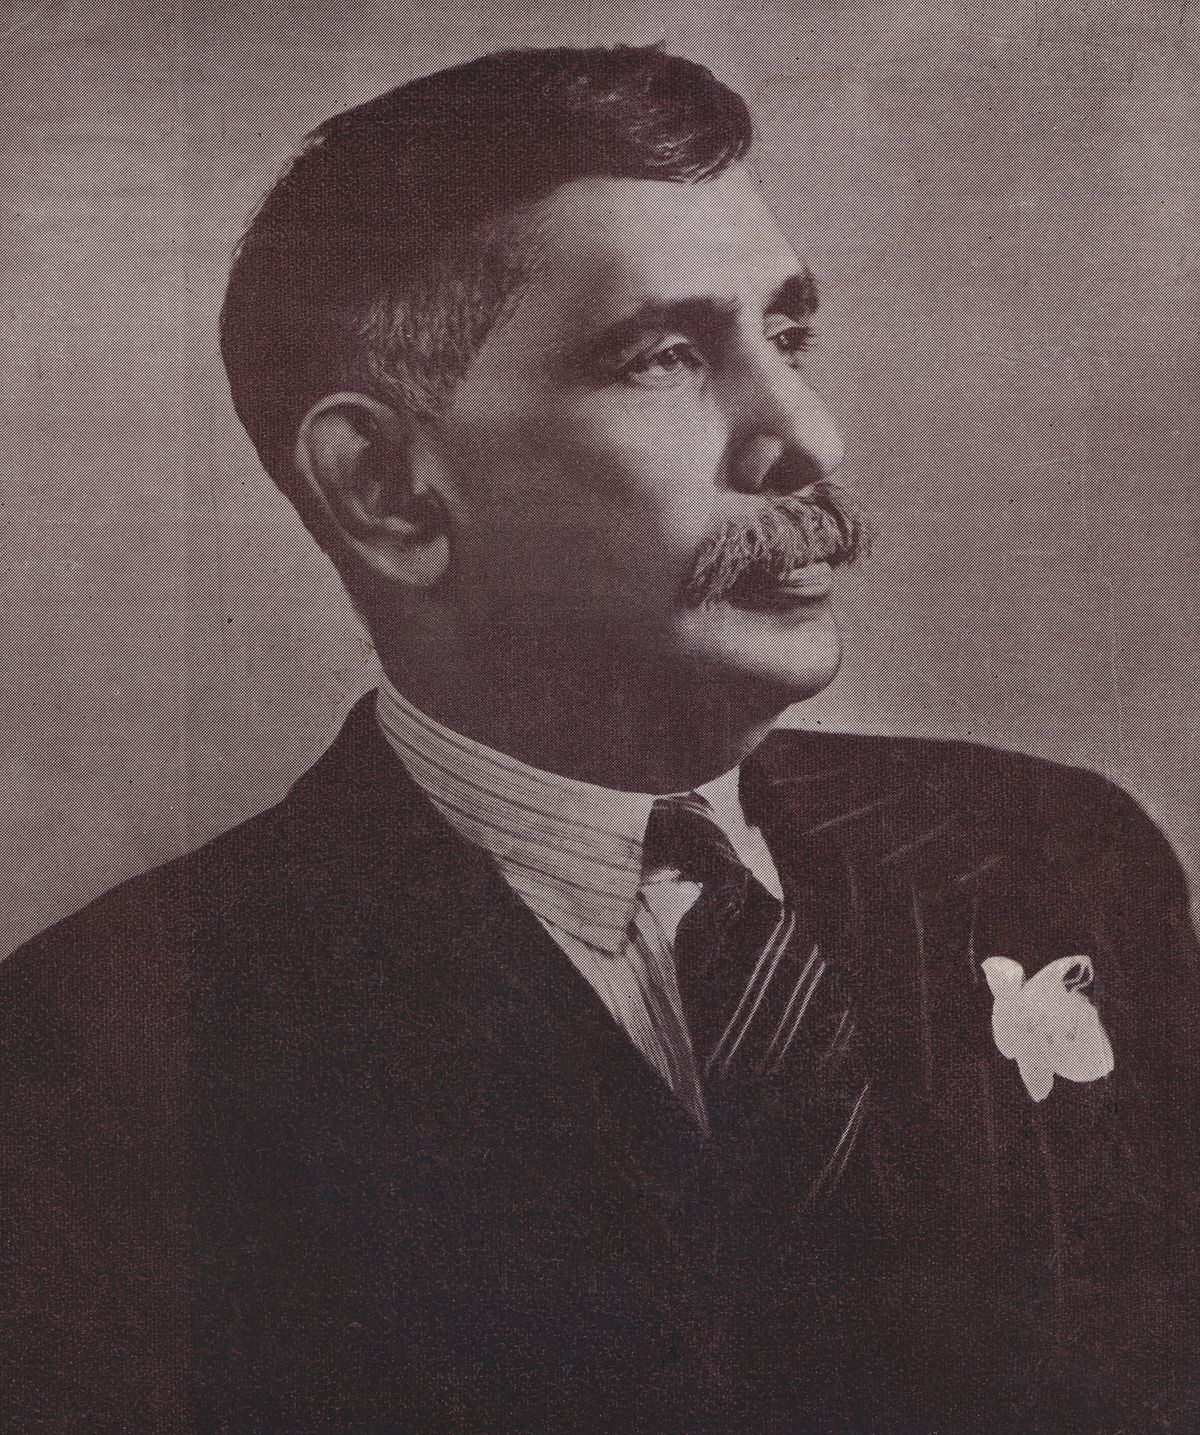 National founder of Sri Lanka